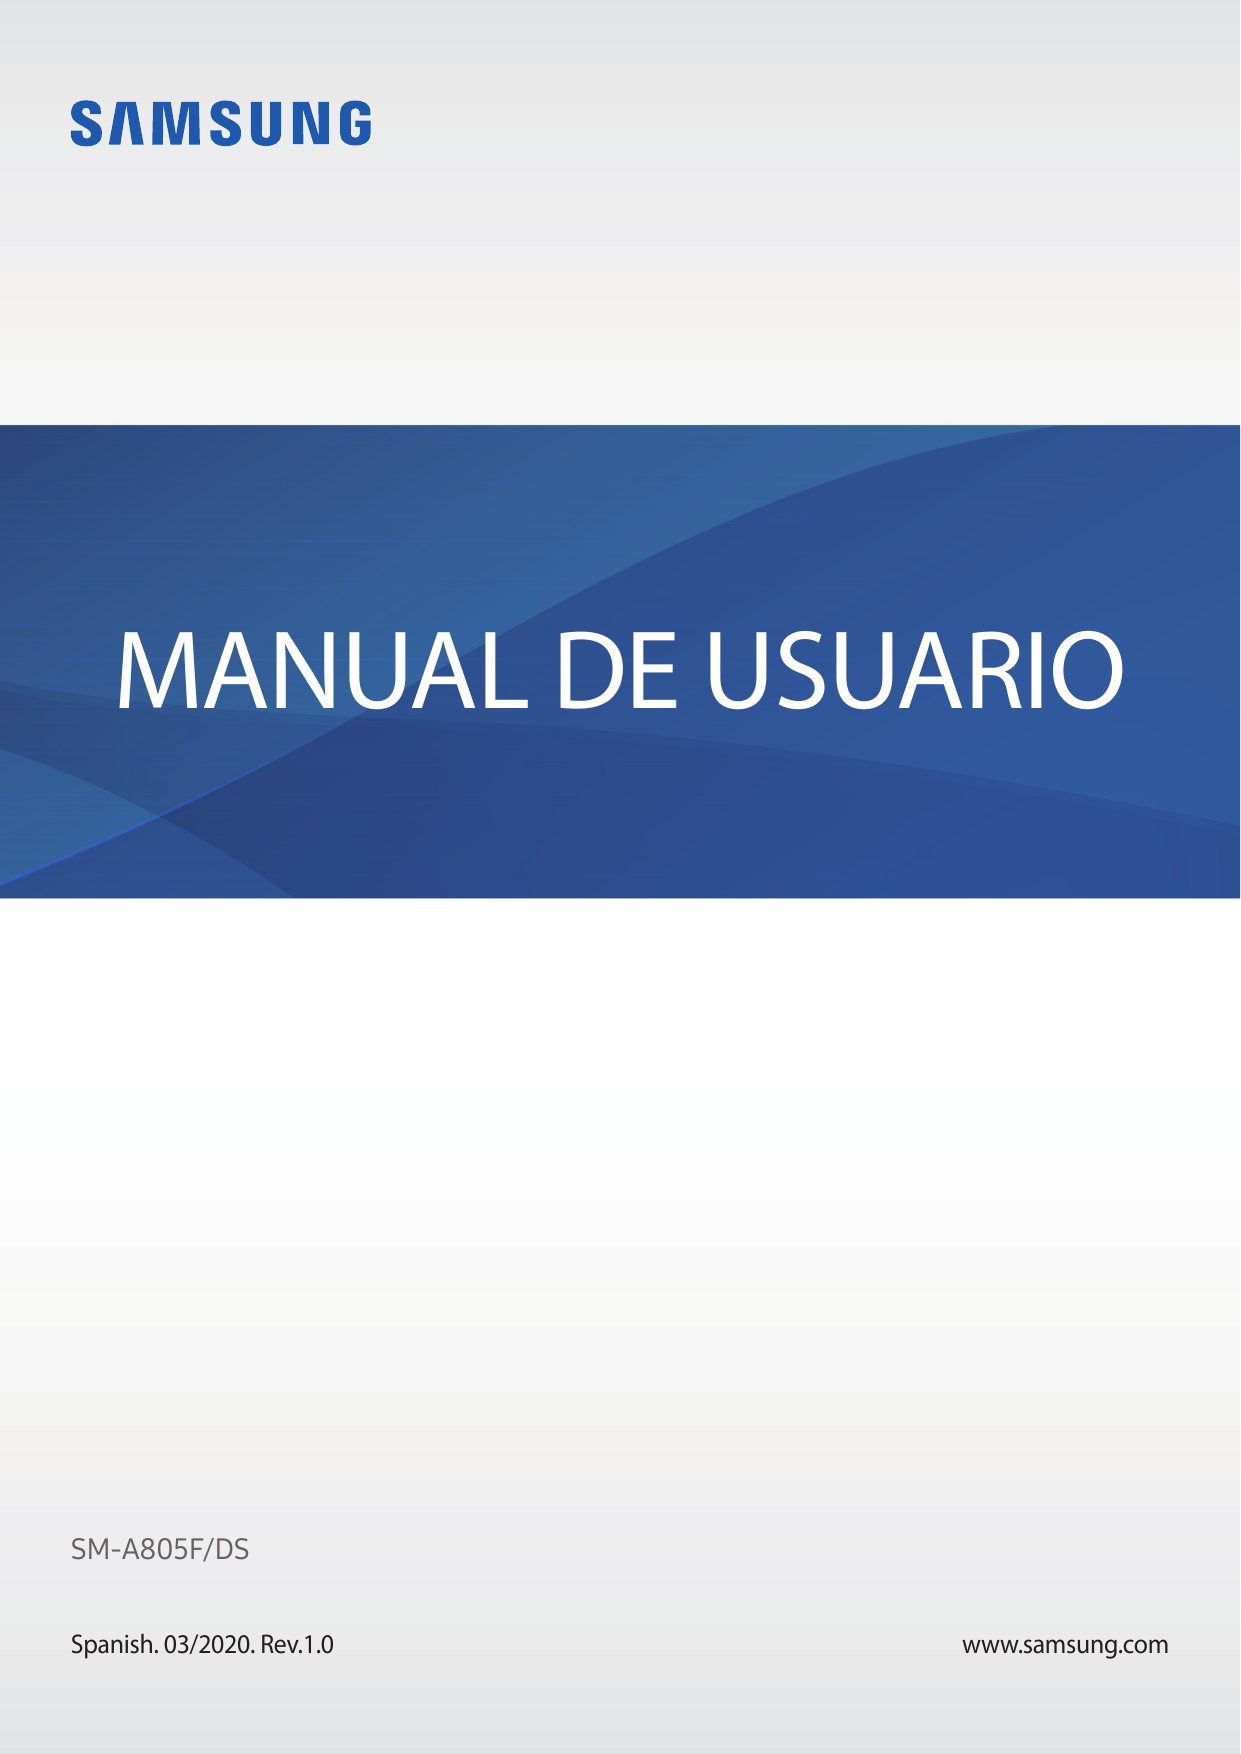 MANUAL DE USUARIOSM-A805F/DSSpanish. 03/2020. Rev.1.0www.samsung.com